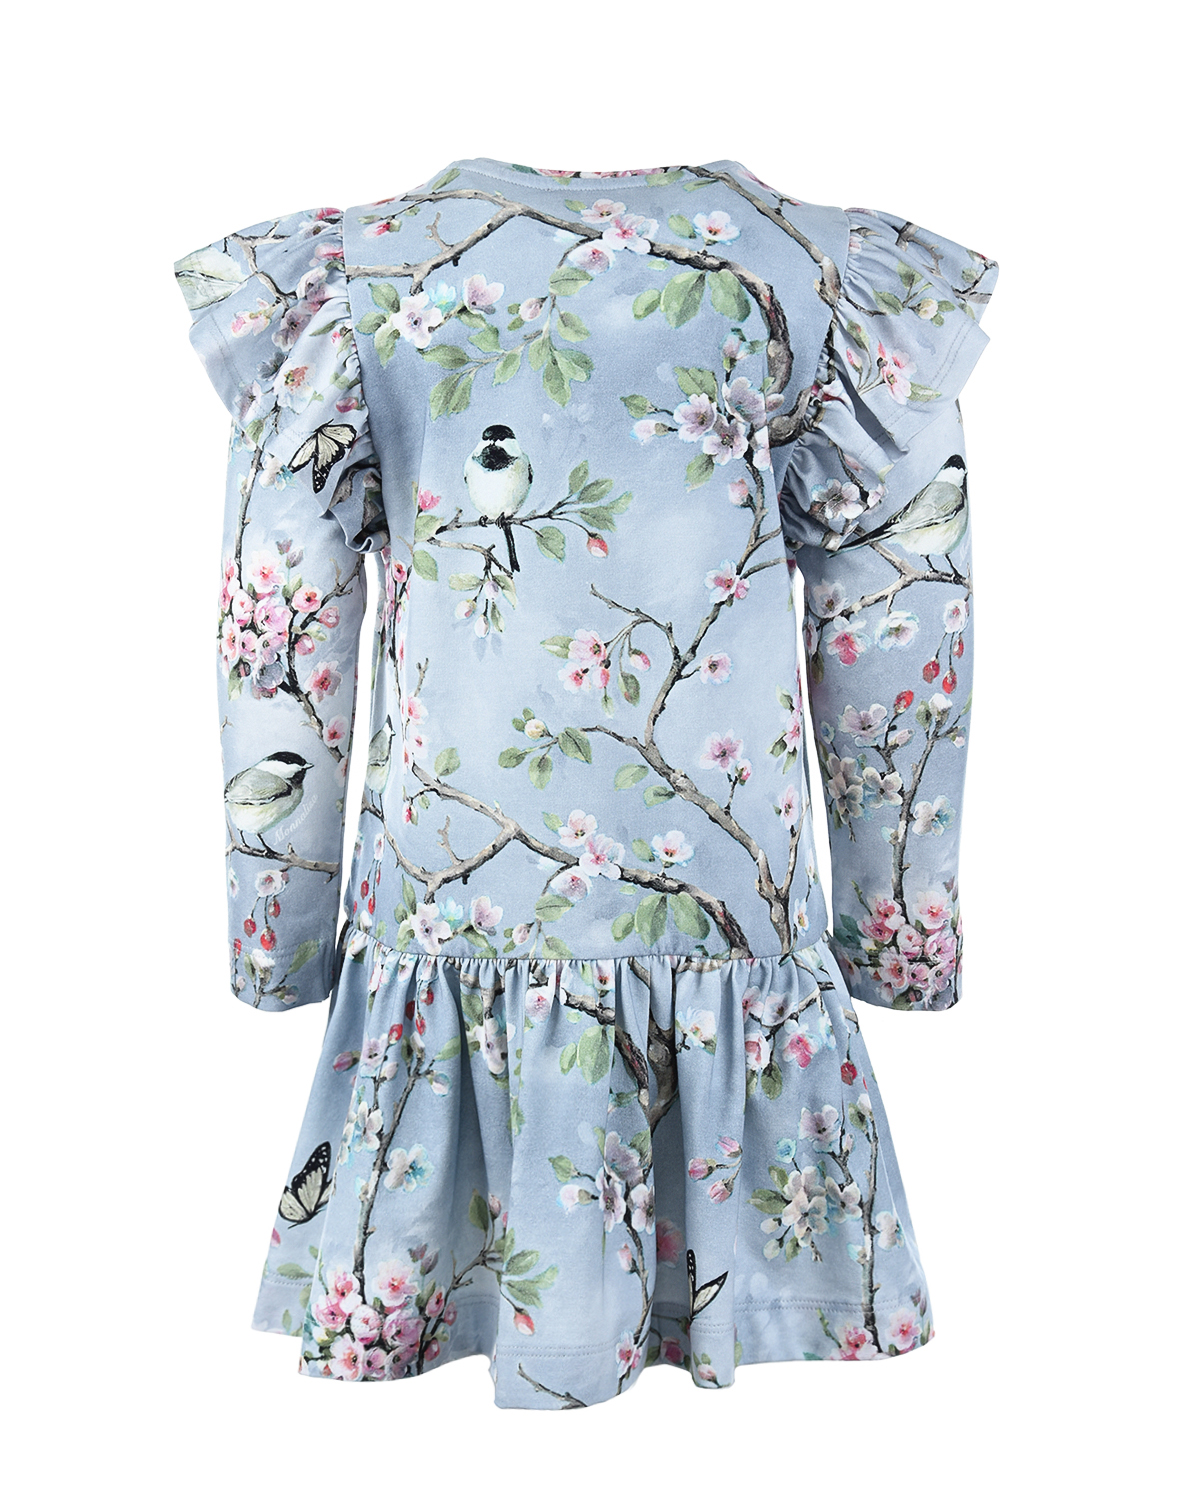 Серое платье с принтом "Синицы" Monnalisa детское, размер 128, цвет серый - фото 2